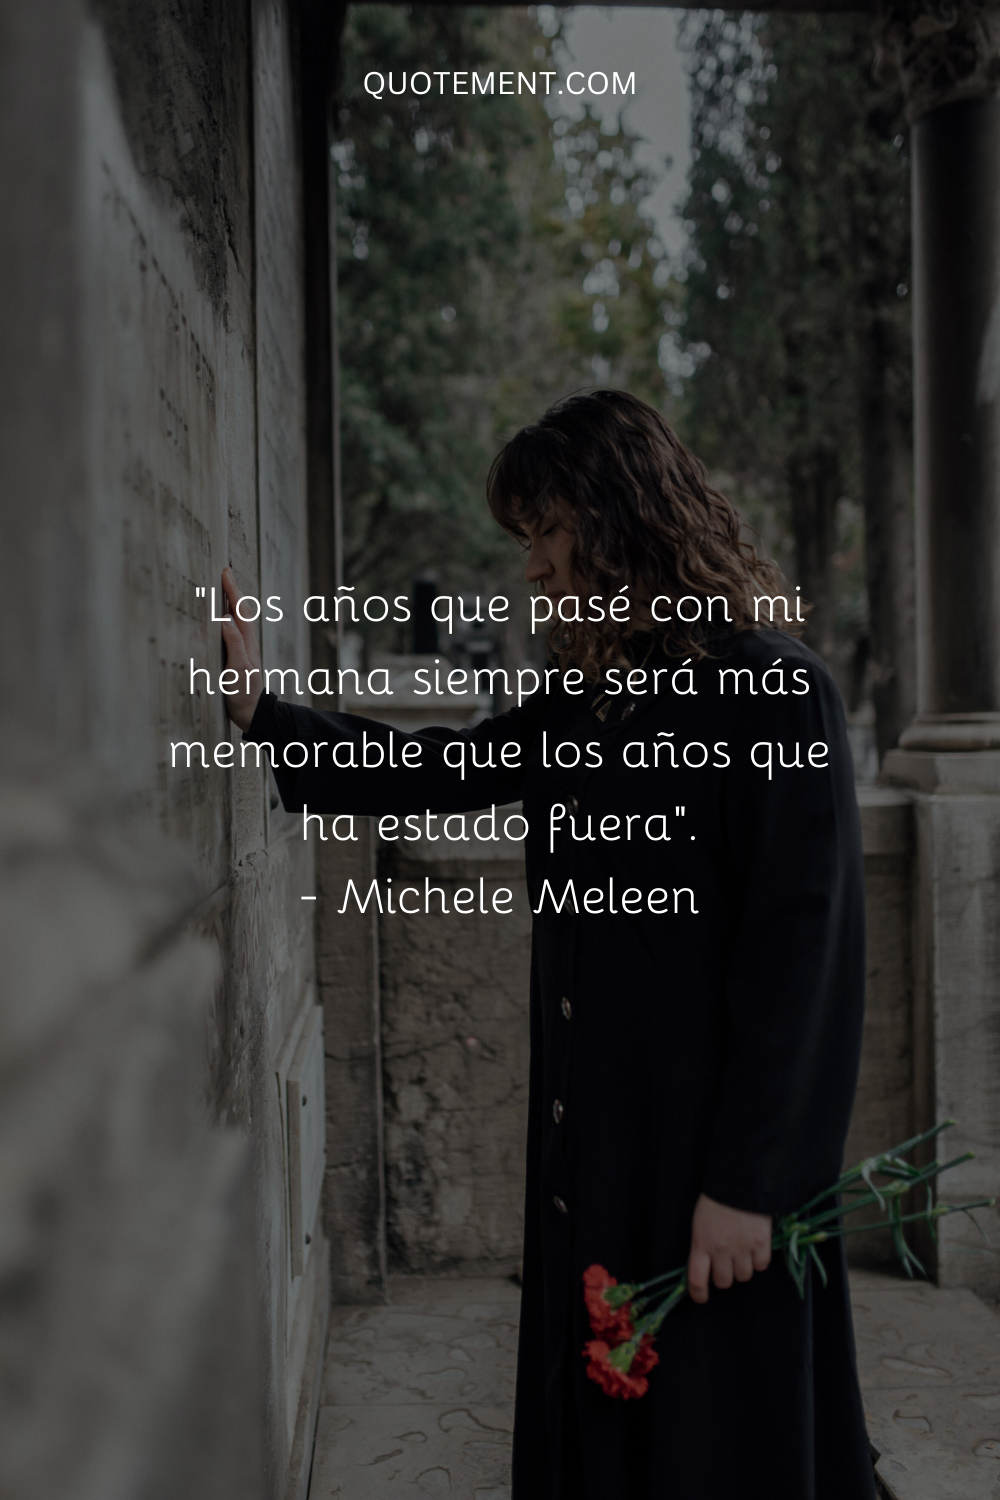 "Los años que pasé con mi hermana siempre serán más memorables que los años que ya no está". - Michele Meleen